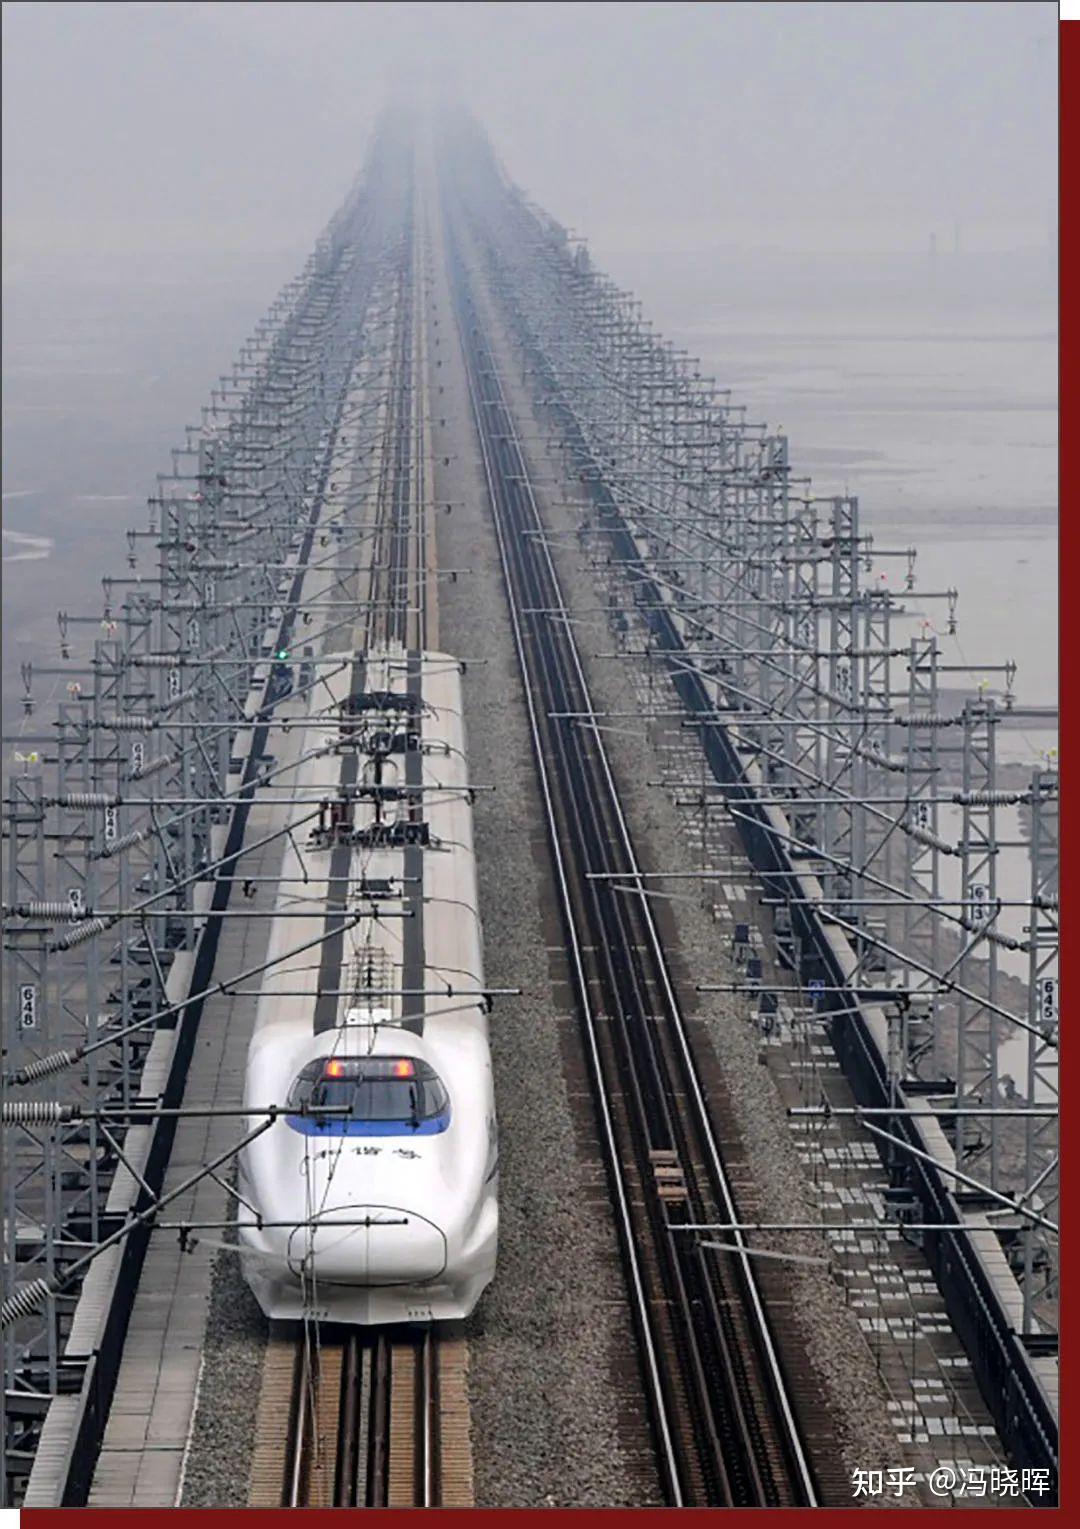 【一线要闻】中国铁路总公司对九景衢铁路工程进行初步验收